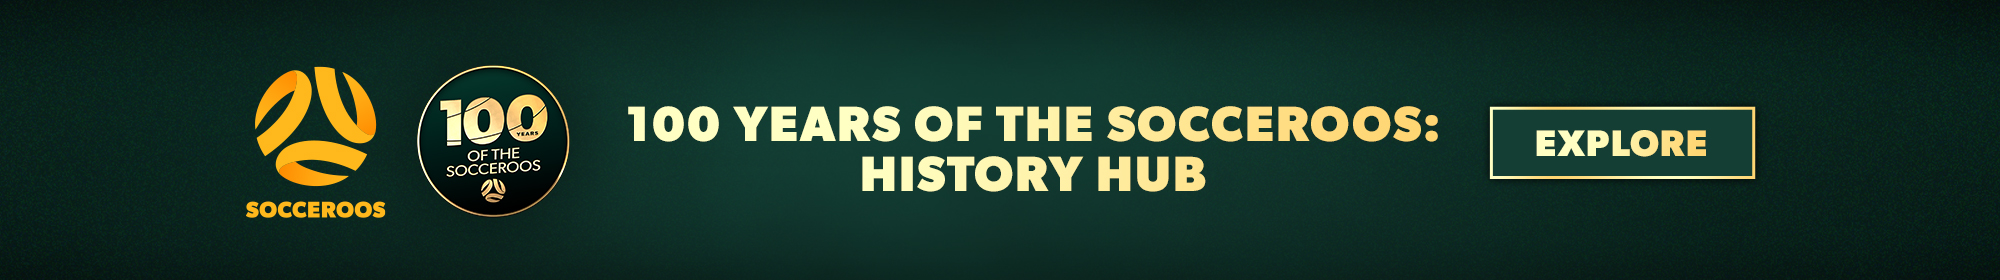 Pancarta delgada de 100 años de historia Hub